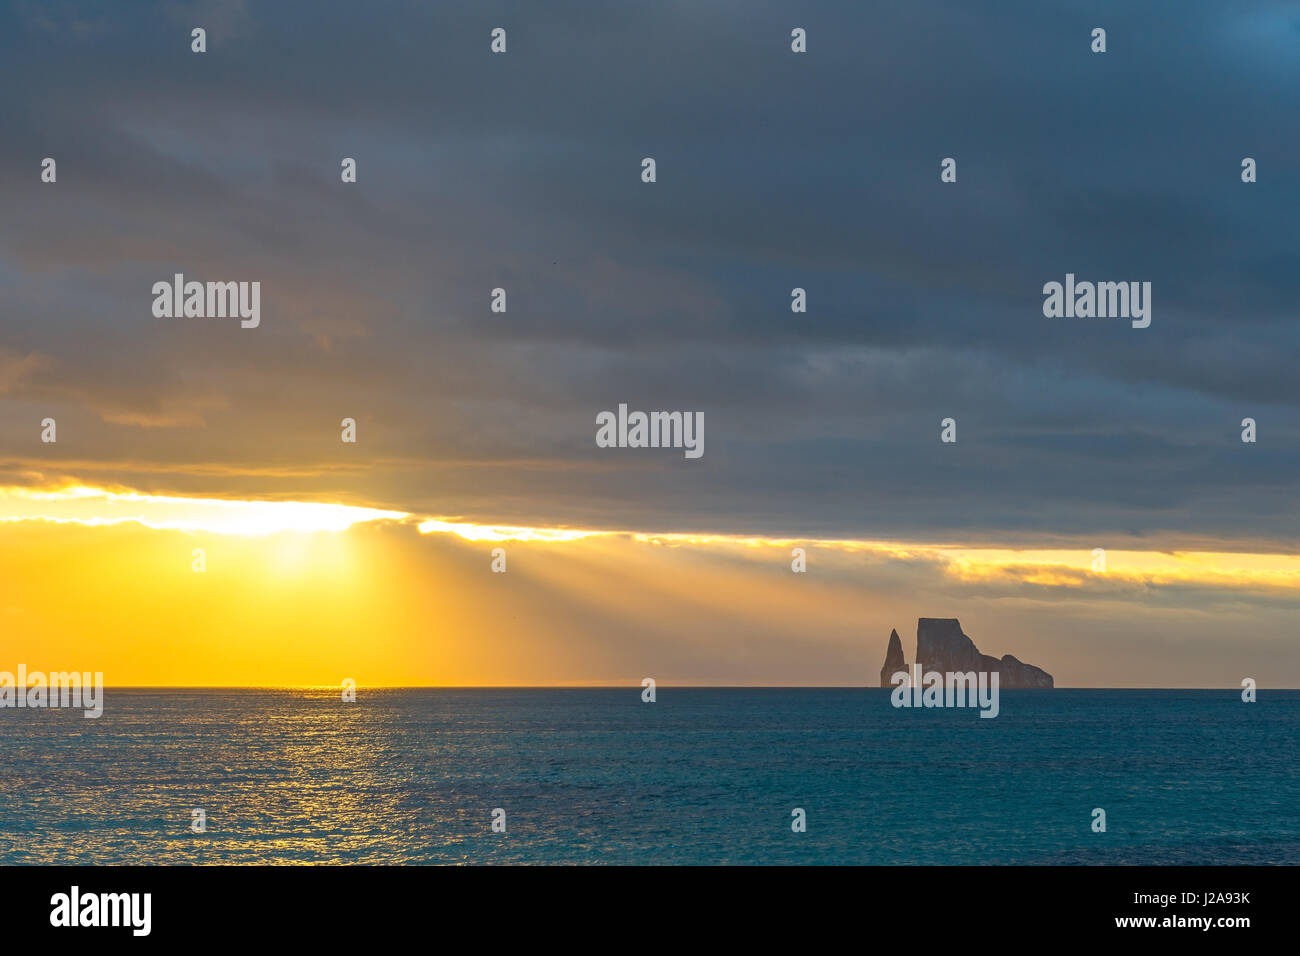 Panorama de la Kicker rock (leon dormido) au coucher du soleil, avec des couleurs superbes et rayons de soleil dans les îles Galapagos, en Équateur. Banque D'Images